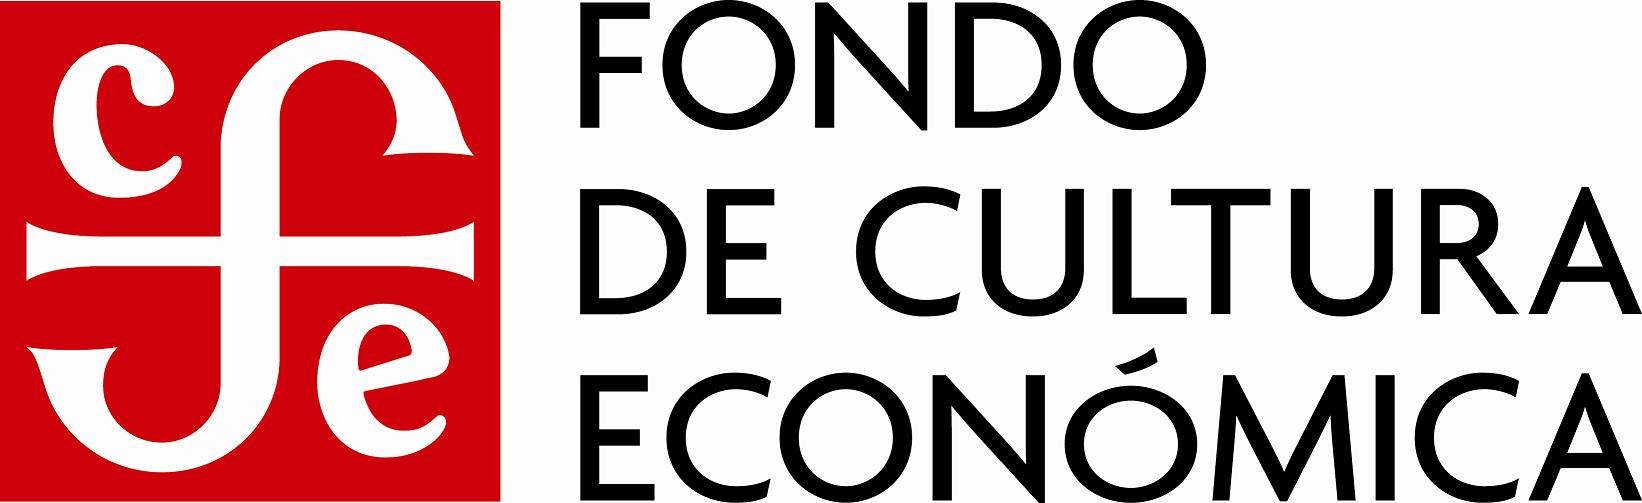 El logo del Fondo de Cultura Económico consiste en un monograma diseñado en 1934 que fue creado a mano para darle ese estilo clásico.